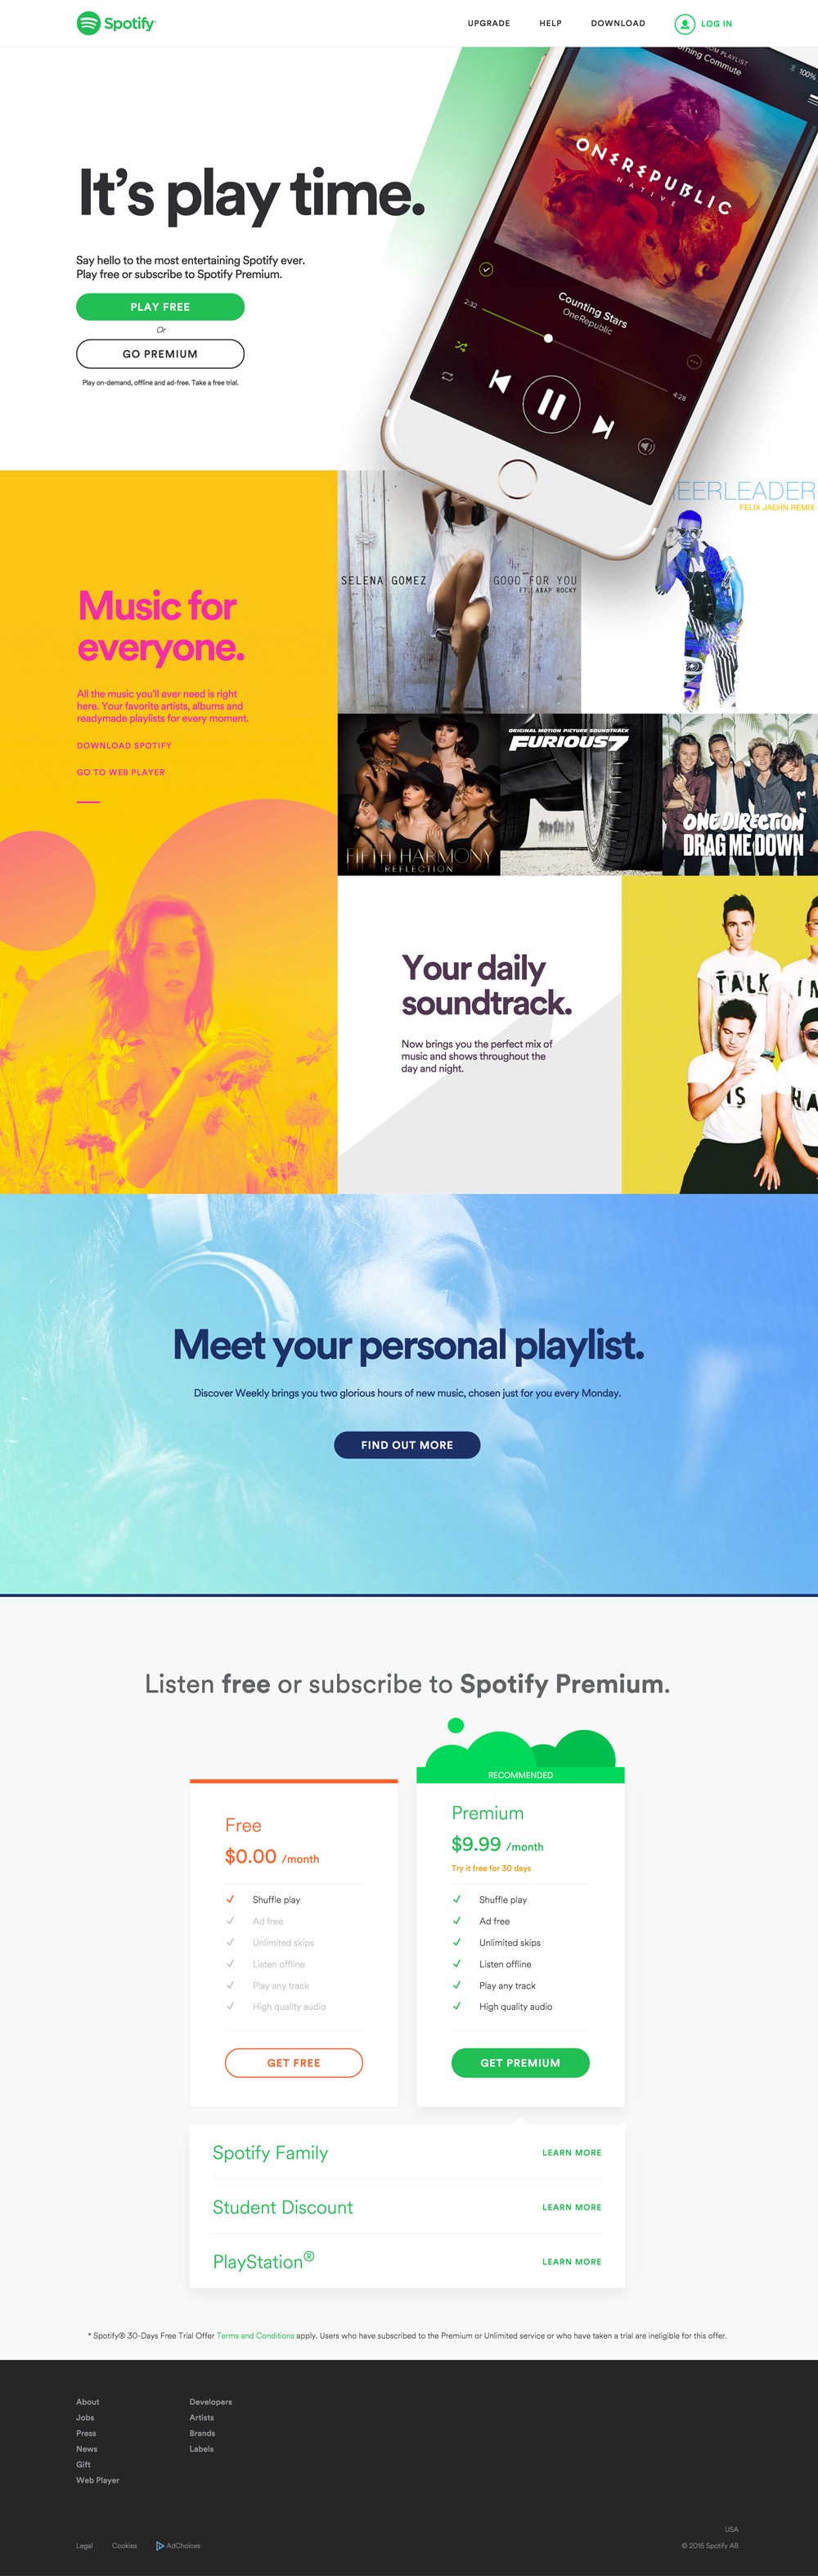 Spotify Premium Vs Free 2016